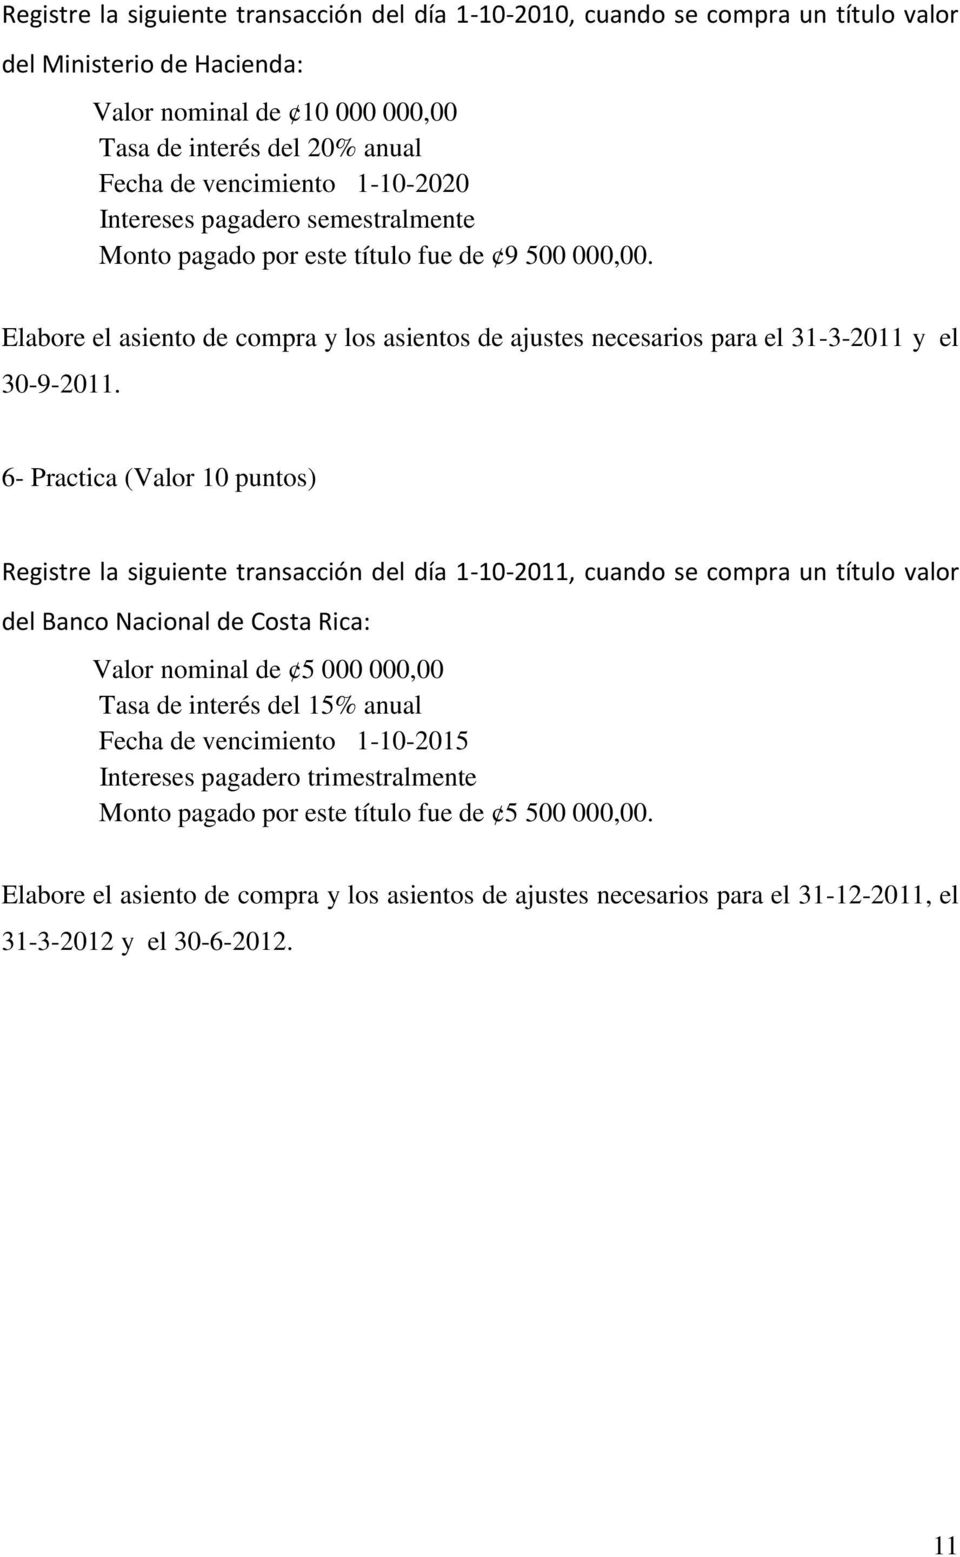 6- Practica (Valor 10 puntos) Registre la siguiente transacción del día 1-10-2011, cuando se compra un título valor del Banco Nacional de Costa Rica: Valor nominal de 5 000 000,00 Tasa de interés del